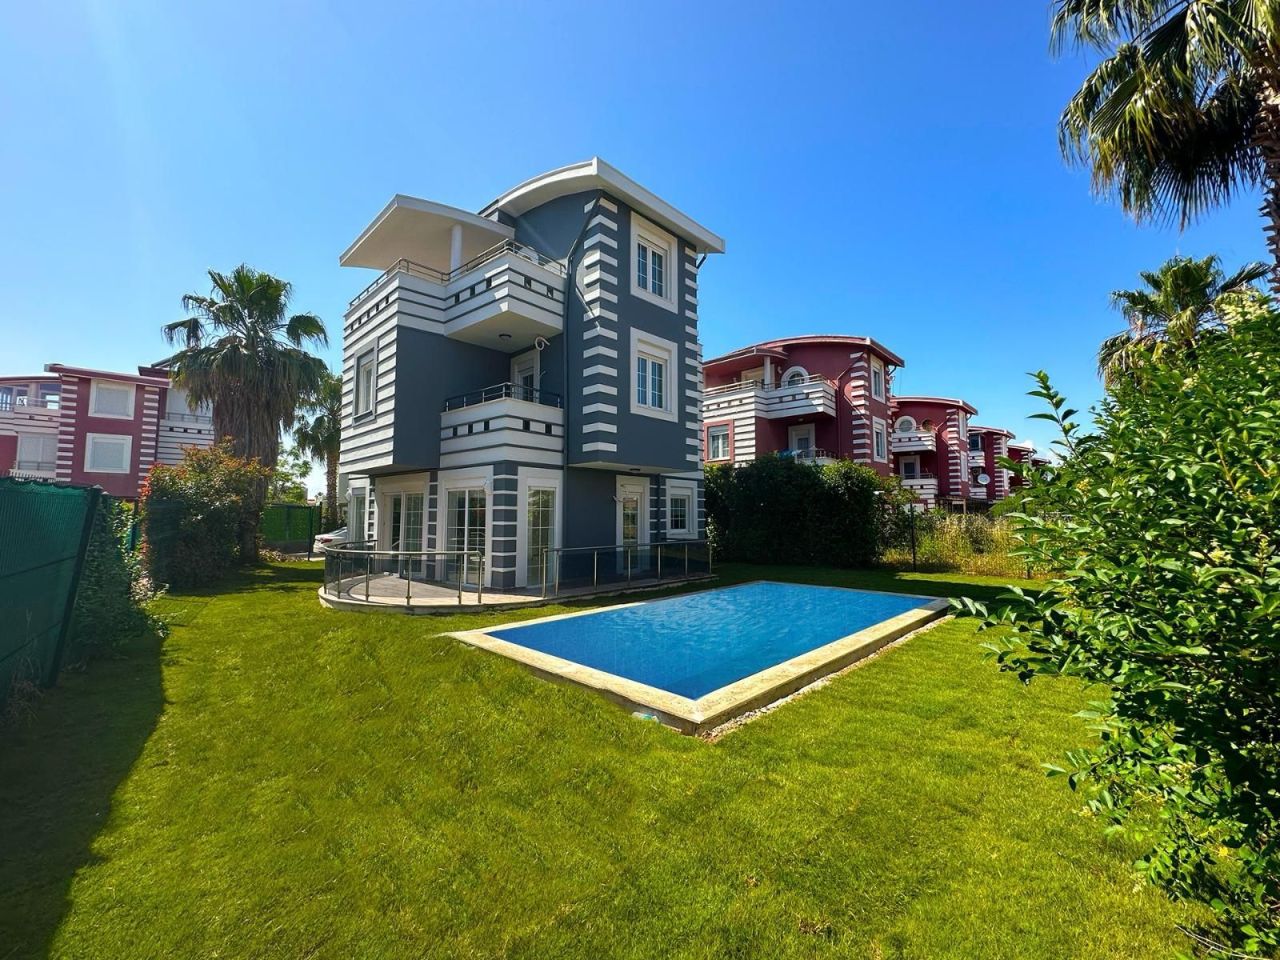 Villa in Belek, Türkei, 220 000 m2 - Foto 1